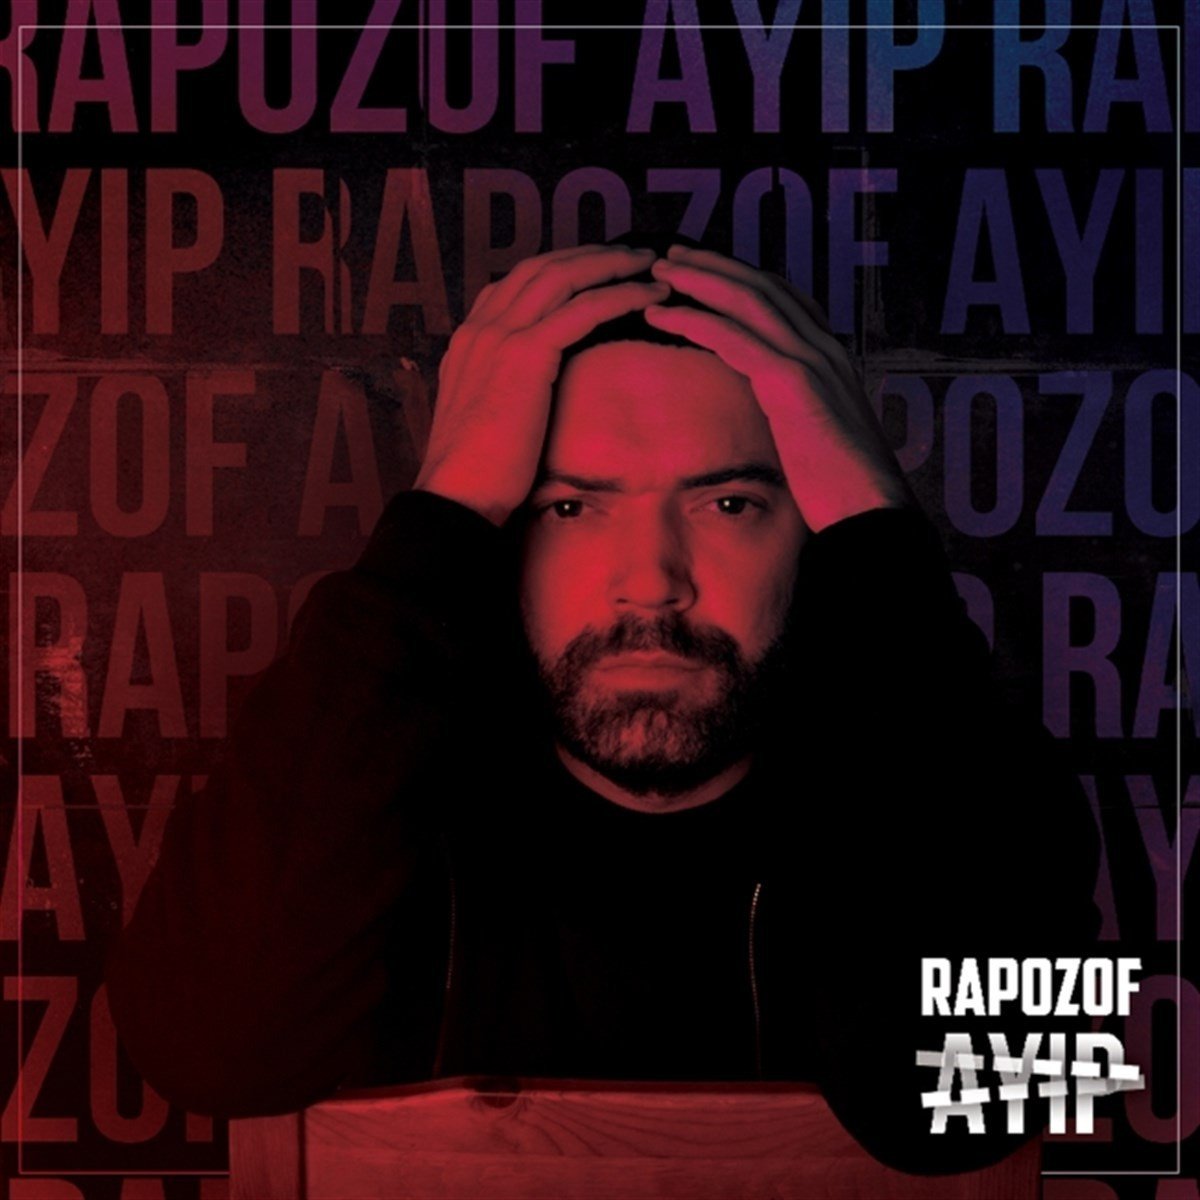 RAPOZOF - AYIP (2017) - CD HIP HOP SIFIR